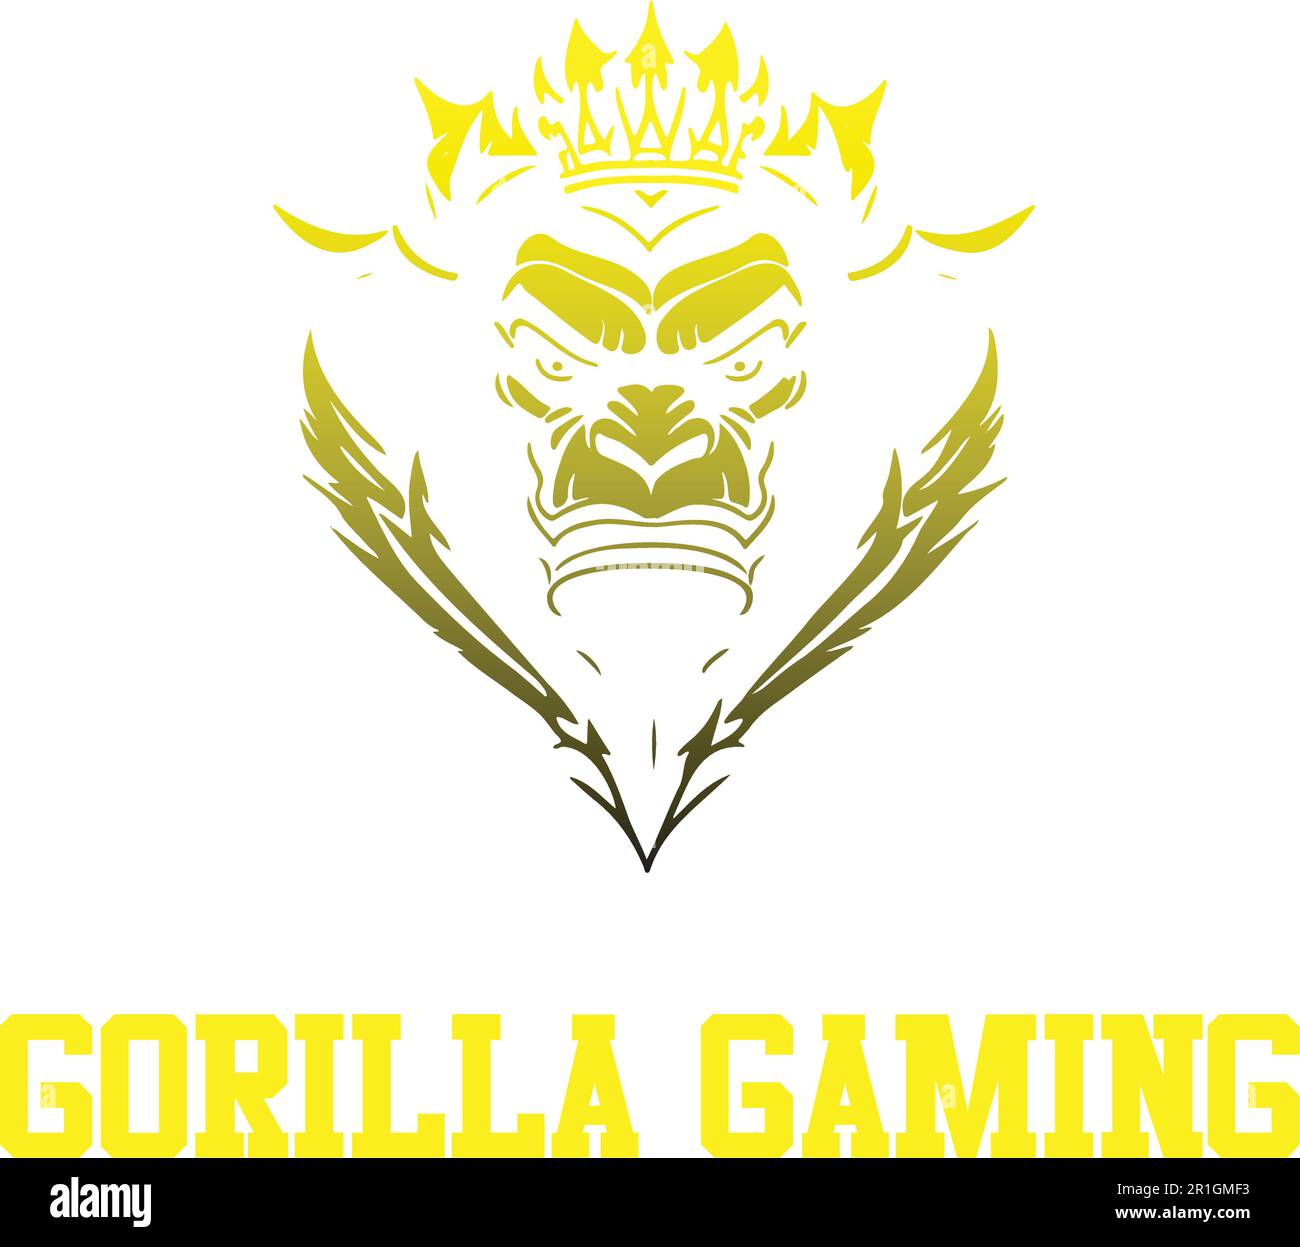 Wir stellen vor: Die Gorilla Gaming Logo-Vorlage, die sich perfekt für alle Gaming-Kanäle oder Streamer eignet, die ihr Branding verbessern möchten. Der hochwertige Vektorfilter Stock Vektor